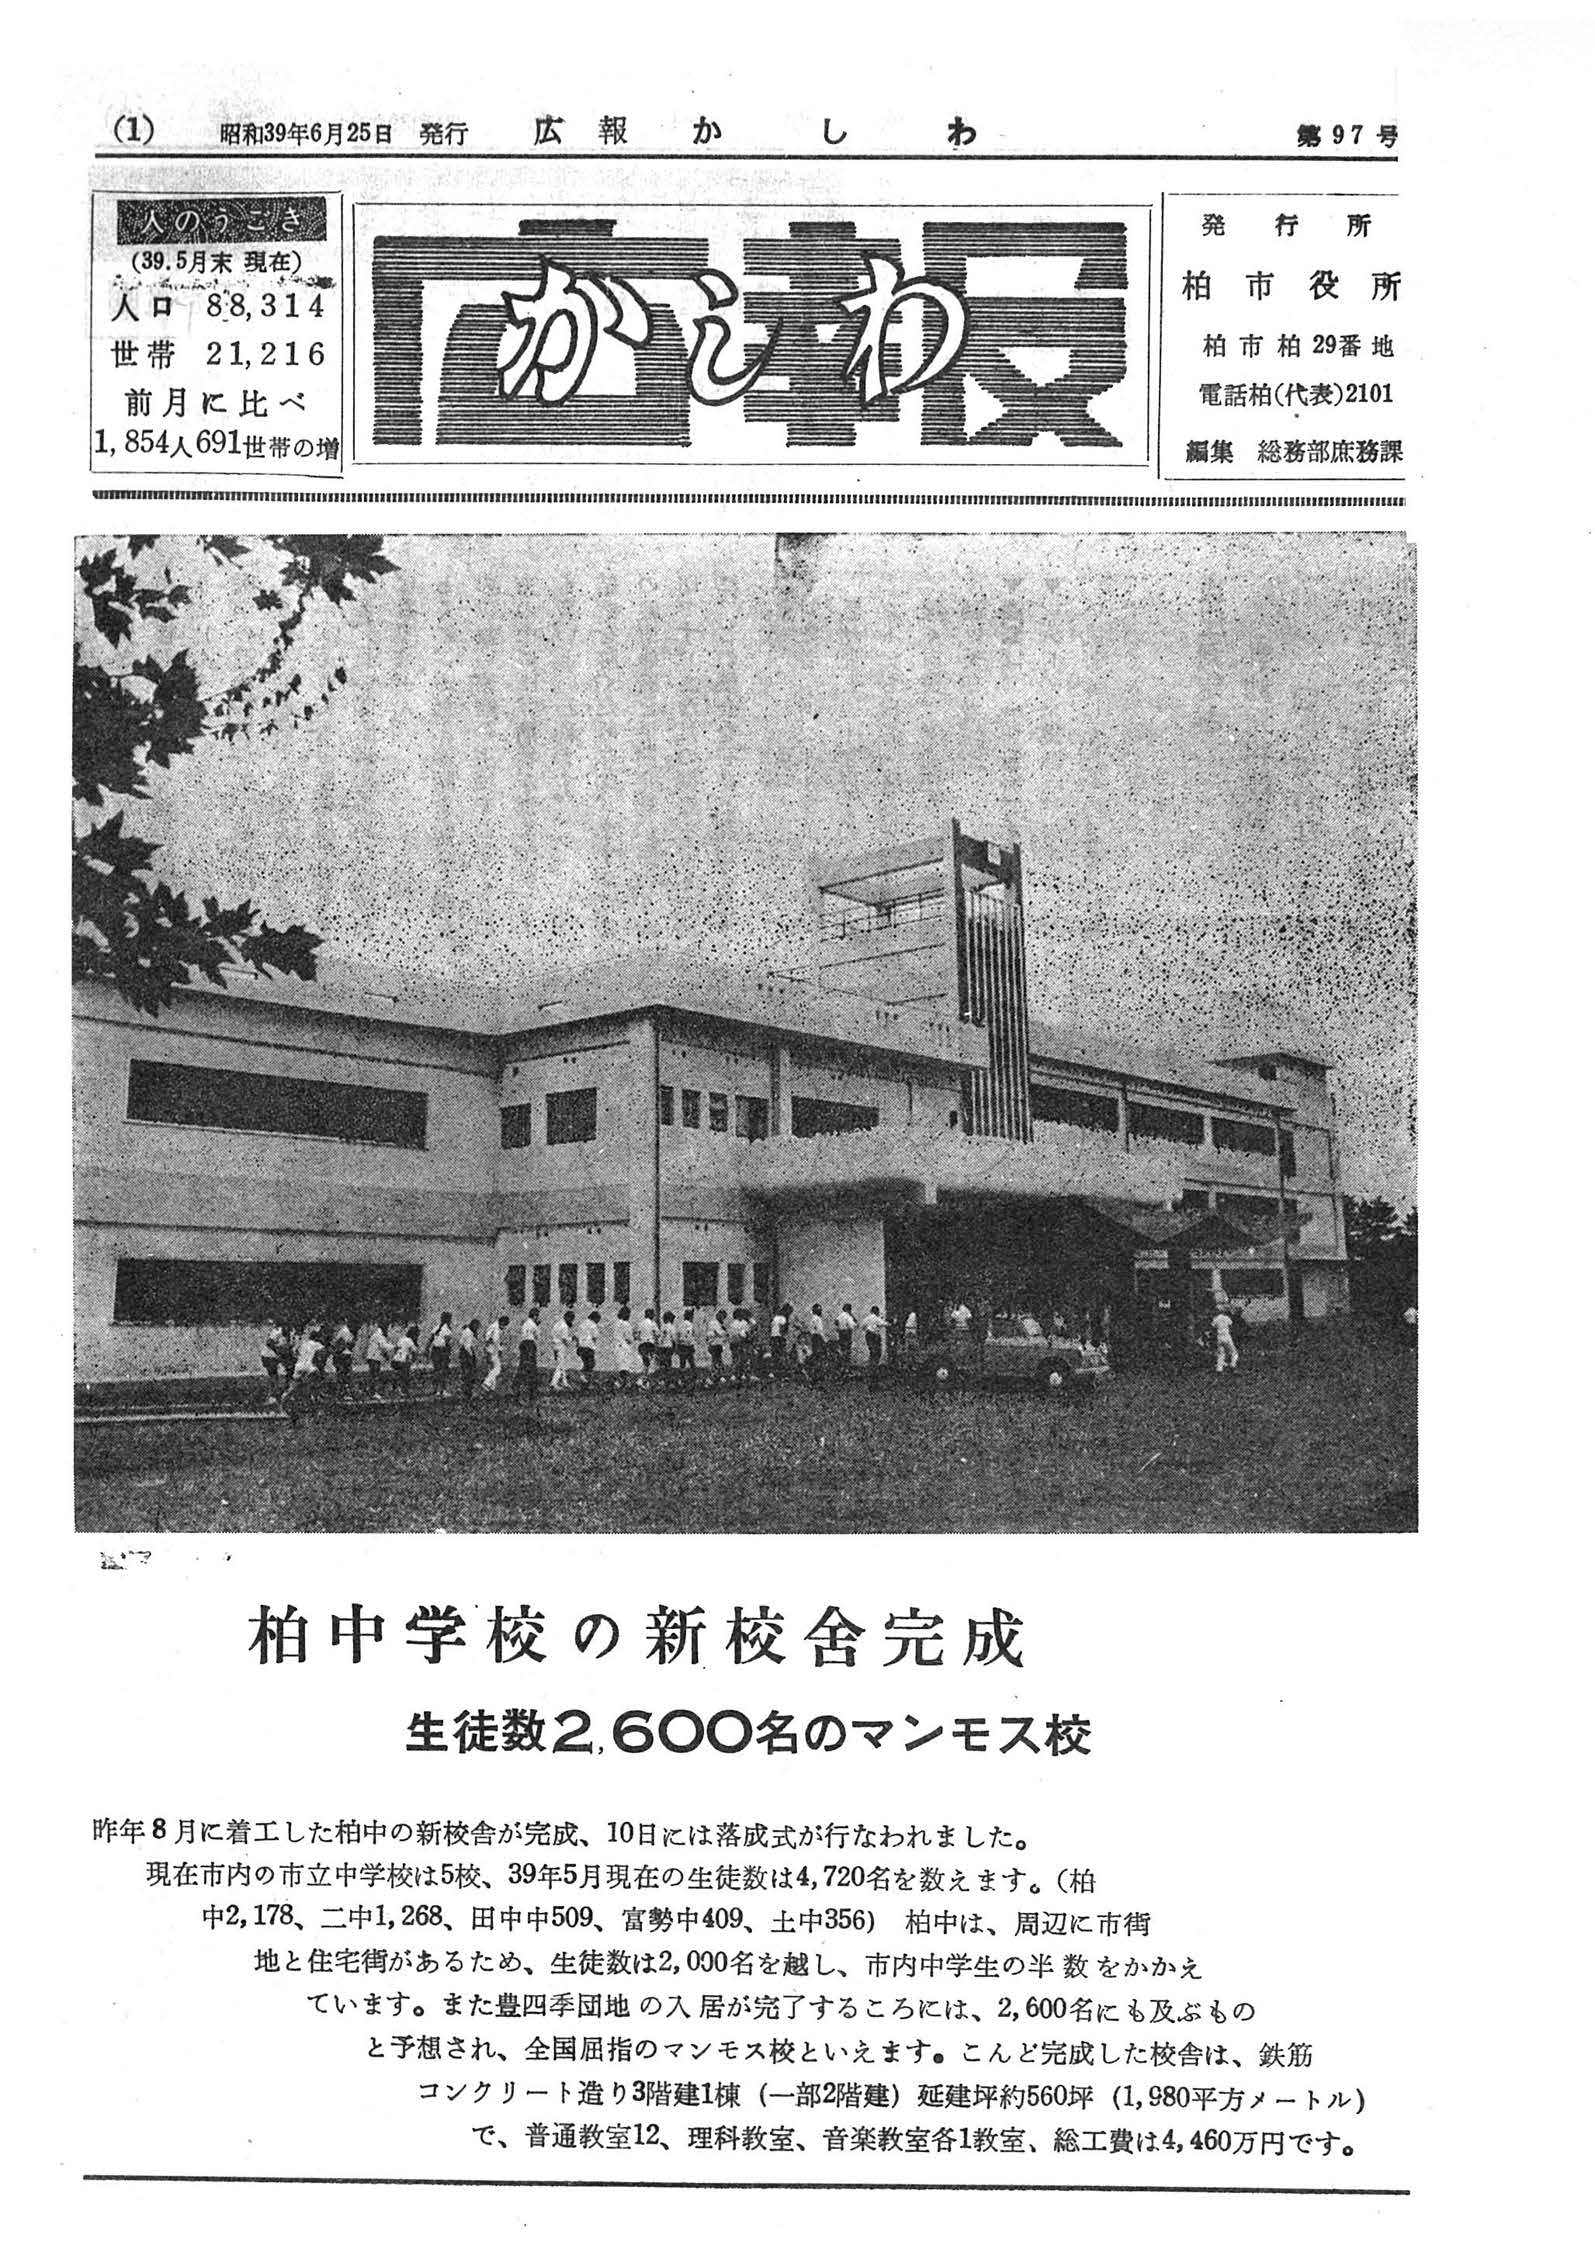 広報かしわ　昭和39年6月25日発行　97号